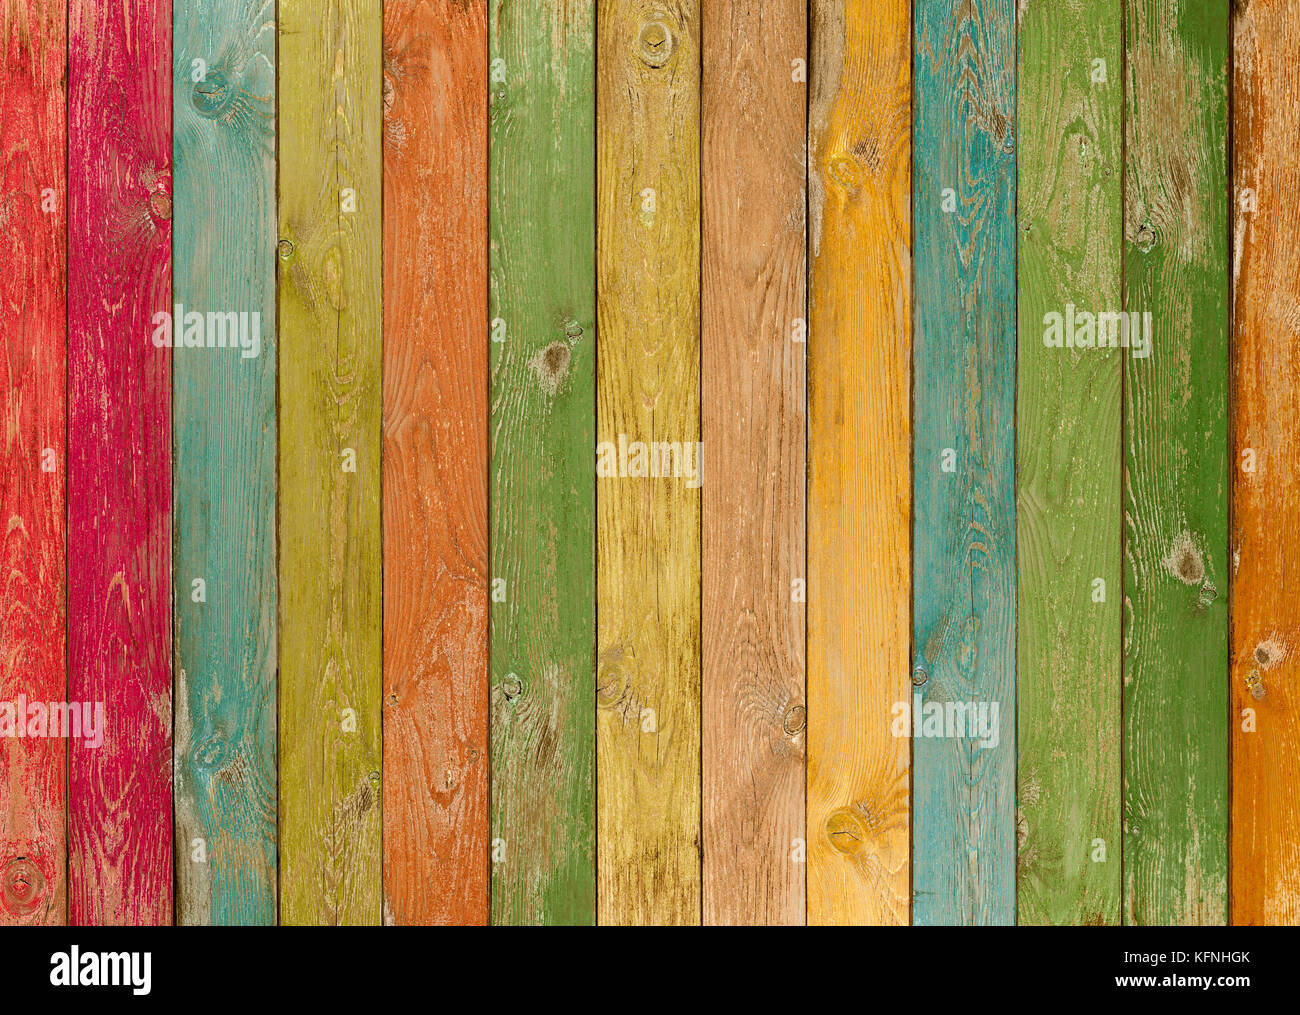 Des planches de bois colorés ou texture background Banque D'Images